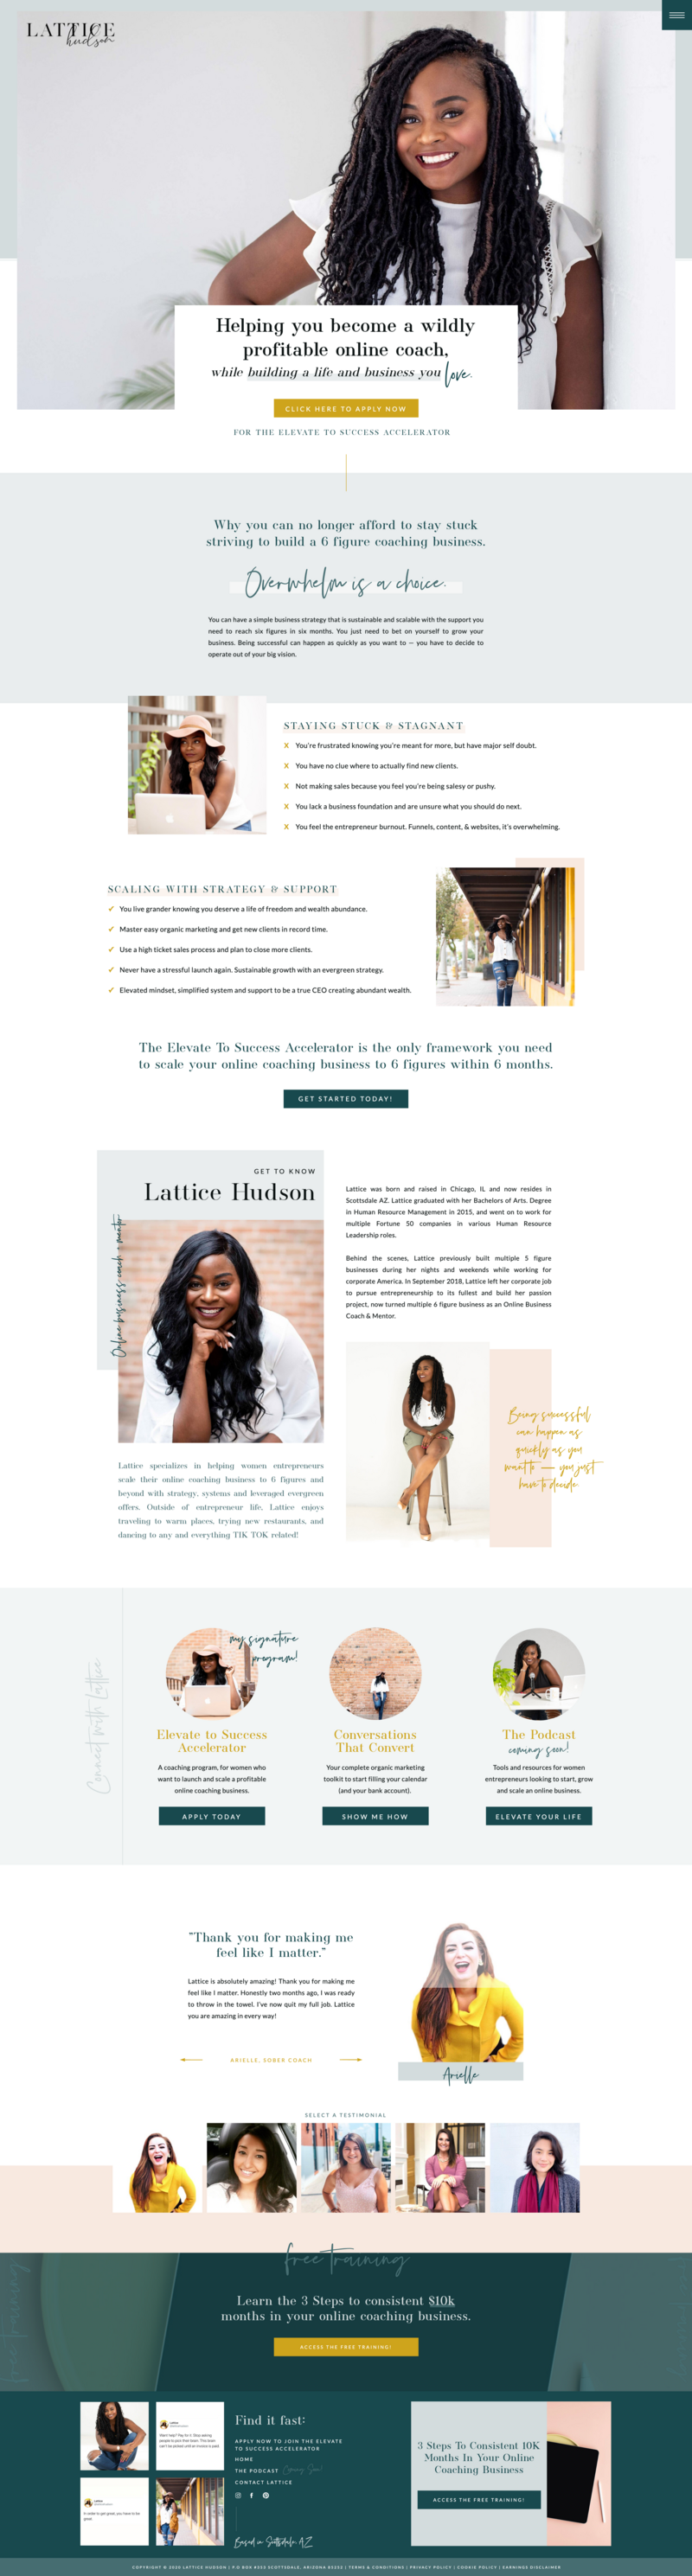 Lattice Hudson Website Transformation